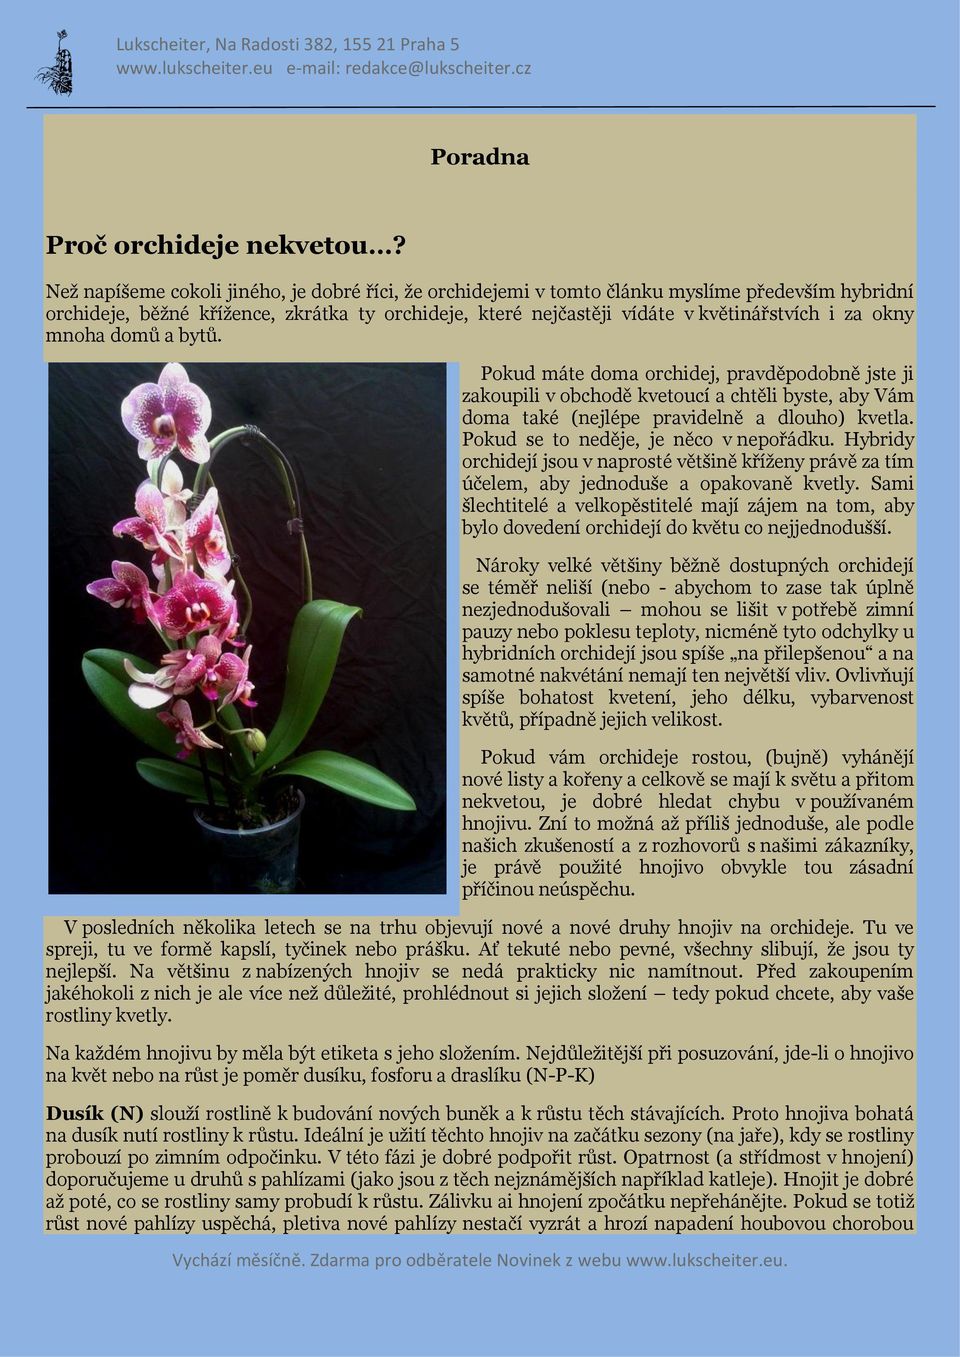 mnoha domů a bytů. Pokud máte doma orchidej, pravděpodobně jste ji zakoupili v obchodě kvetoucí a chtěli byste, aby Vám doma také (nejlépe pravidelně a dlouho) kvetla.